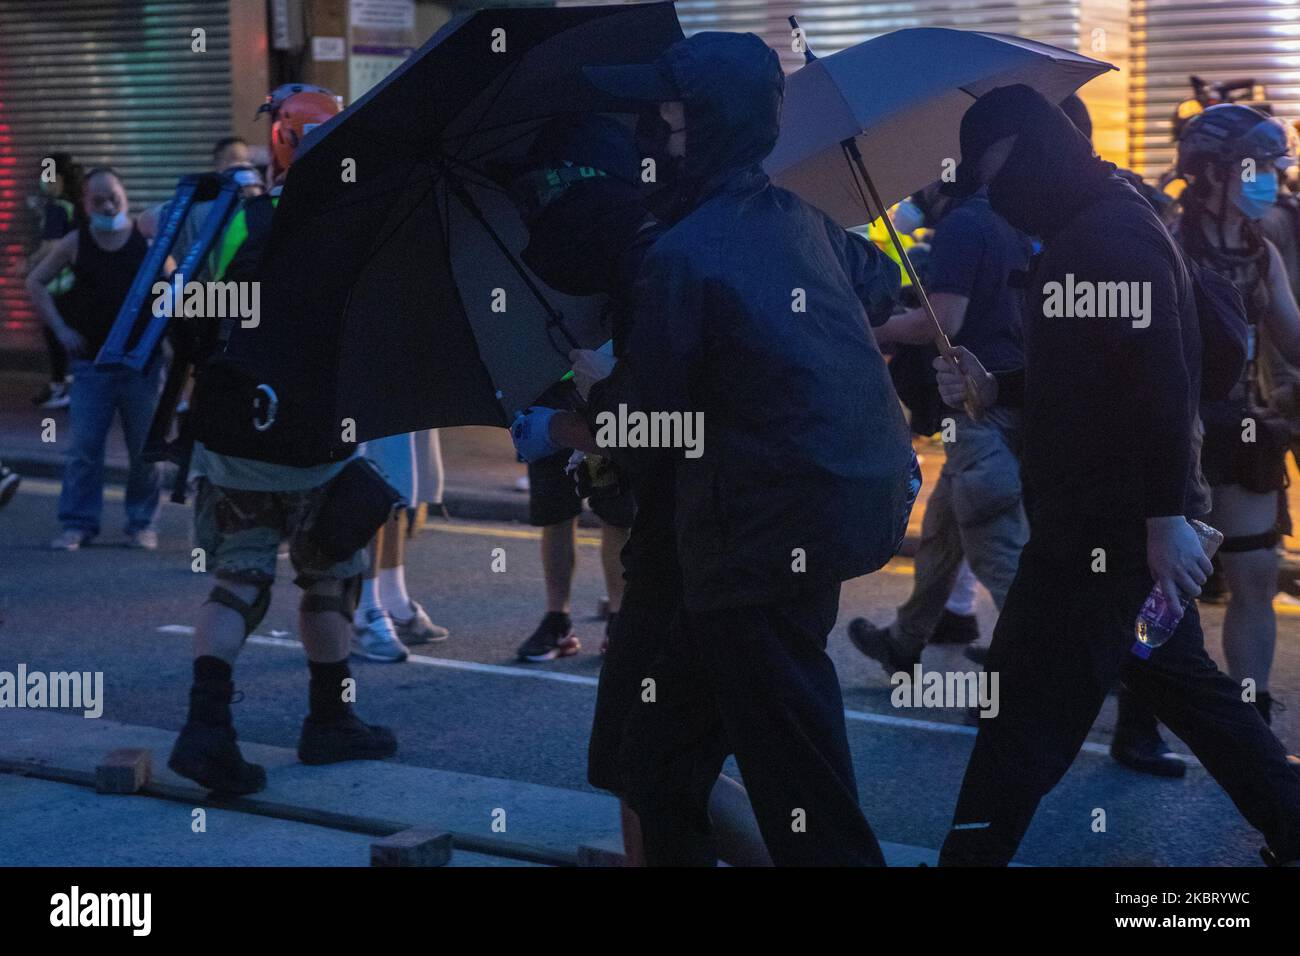 Molotov's sono visti prima che i manifestanti gettino uno ad un panificio di Maxims. Molotov potrebbe essere considerato un atto di terrorismo ai sensi della legge sulla sicurezza nazionale di Hong Kong, Cina, il 1 luglio 2020. (Foto di Simon Jankowski/NurPhoto) Foto Stock